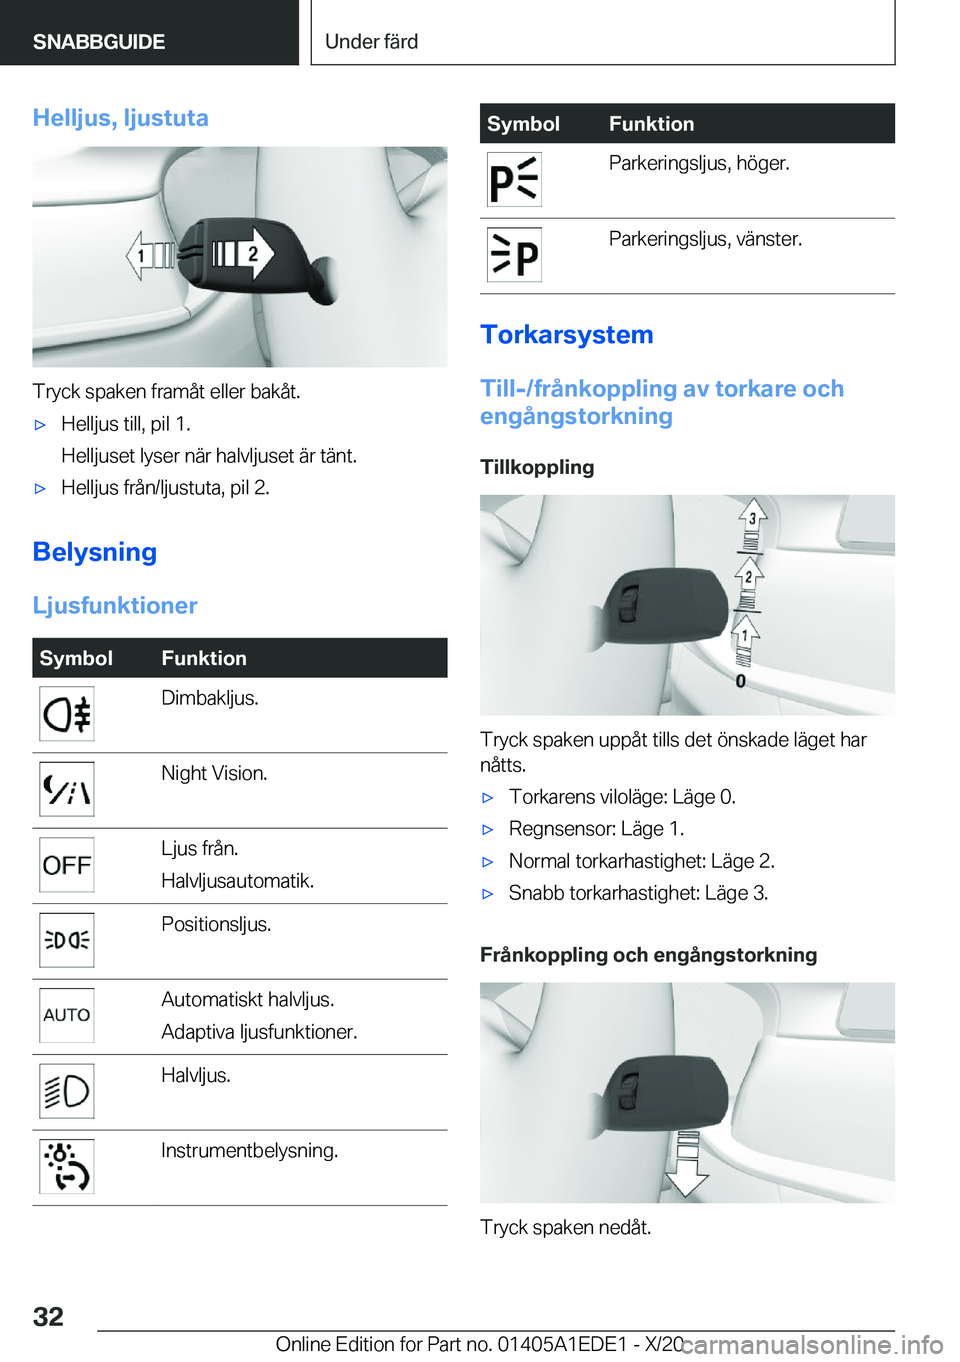 BMW 8 SERIES CONVERTIBLE 2021  InstruktionsbÖcker (in Swedish) �H�e�l�l�j�u�s�,��l�j�u�s�t�u�t�a
�T�r�y�c�k��s�p�a�k�e�n��f�r�a�m�å�t��e�l�l�e�r��b�a�k�å�t�.
'x�H�e�l�l�j�u�s��t�i�l�l�,��p�i�l��1�.
�H�e�l�l�j�u�s�e�t��l�y�s�e�r��n�ä�r��h�a�l�v�l